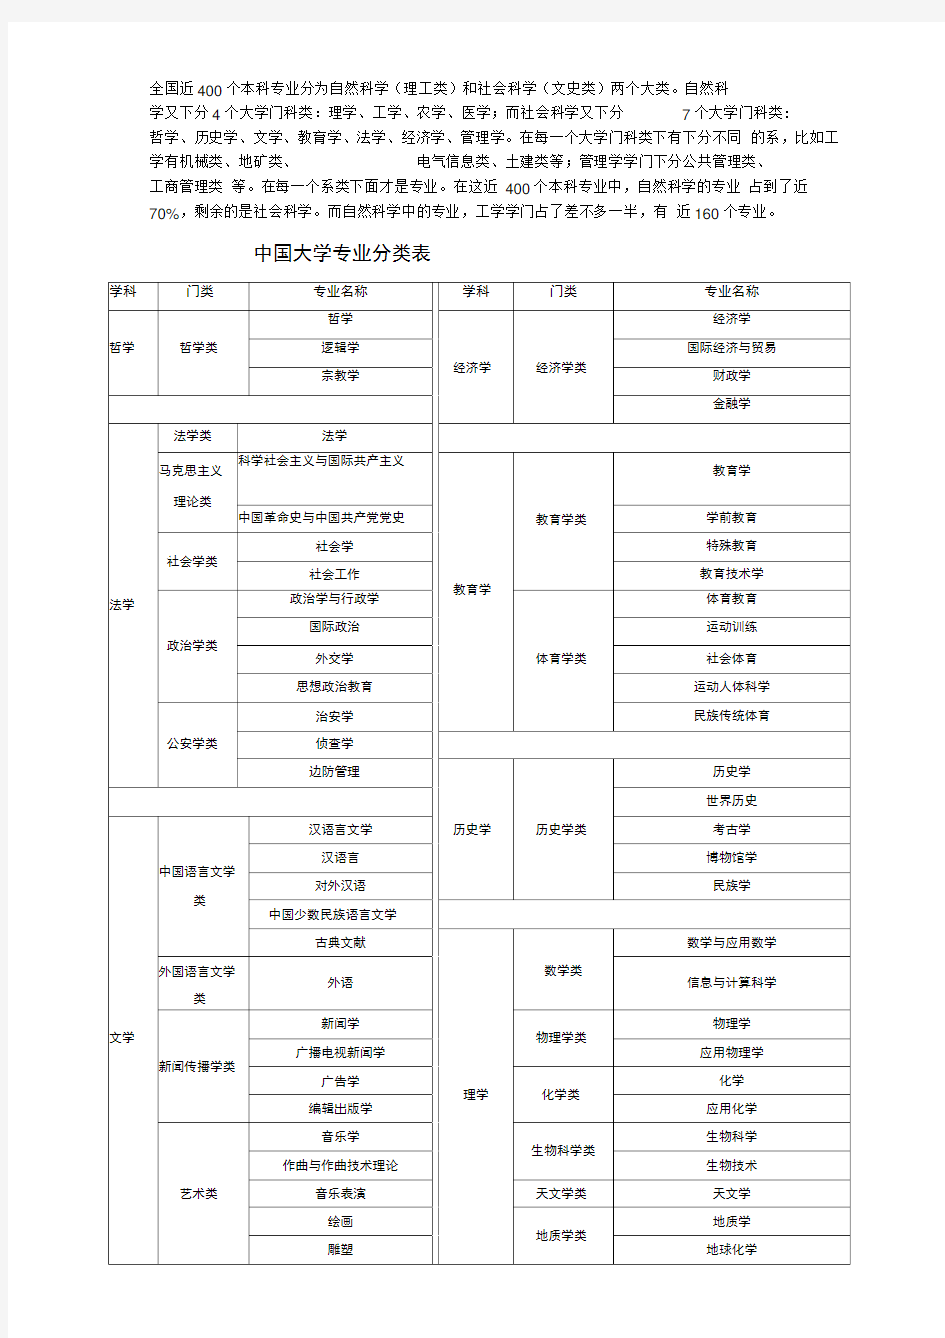 中国、美国大学专业分类表